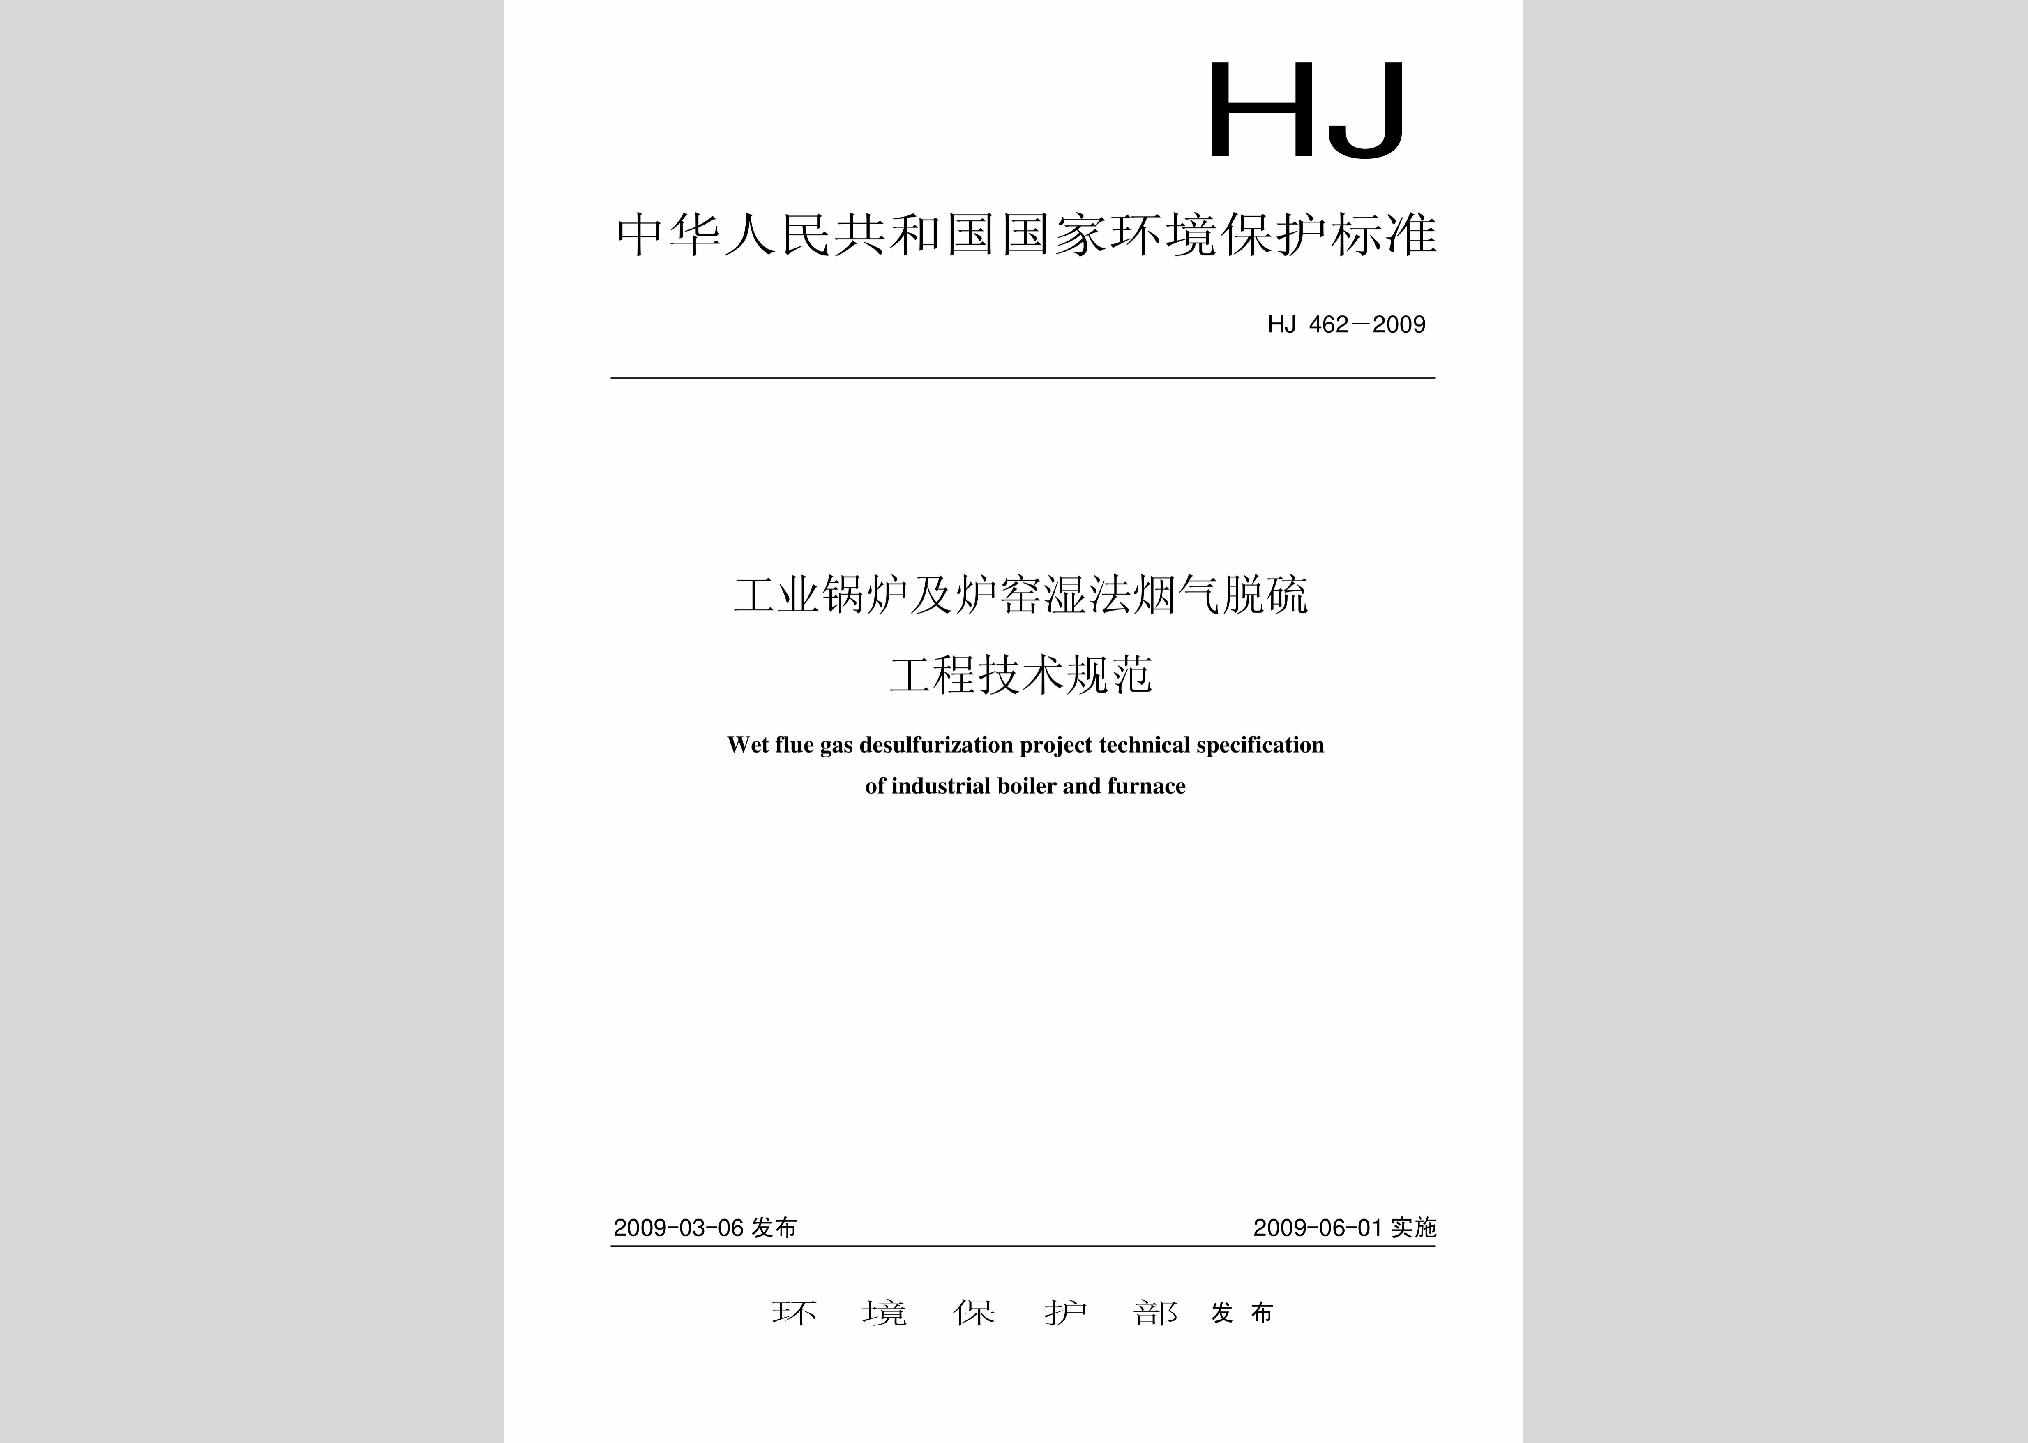 HJ462-2009：工业锅炉及炉窑湿法烟气脱硫工程技术规范